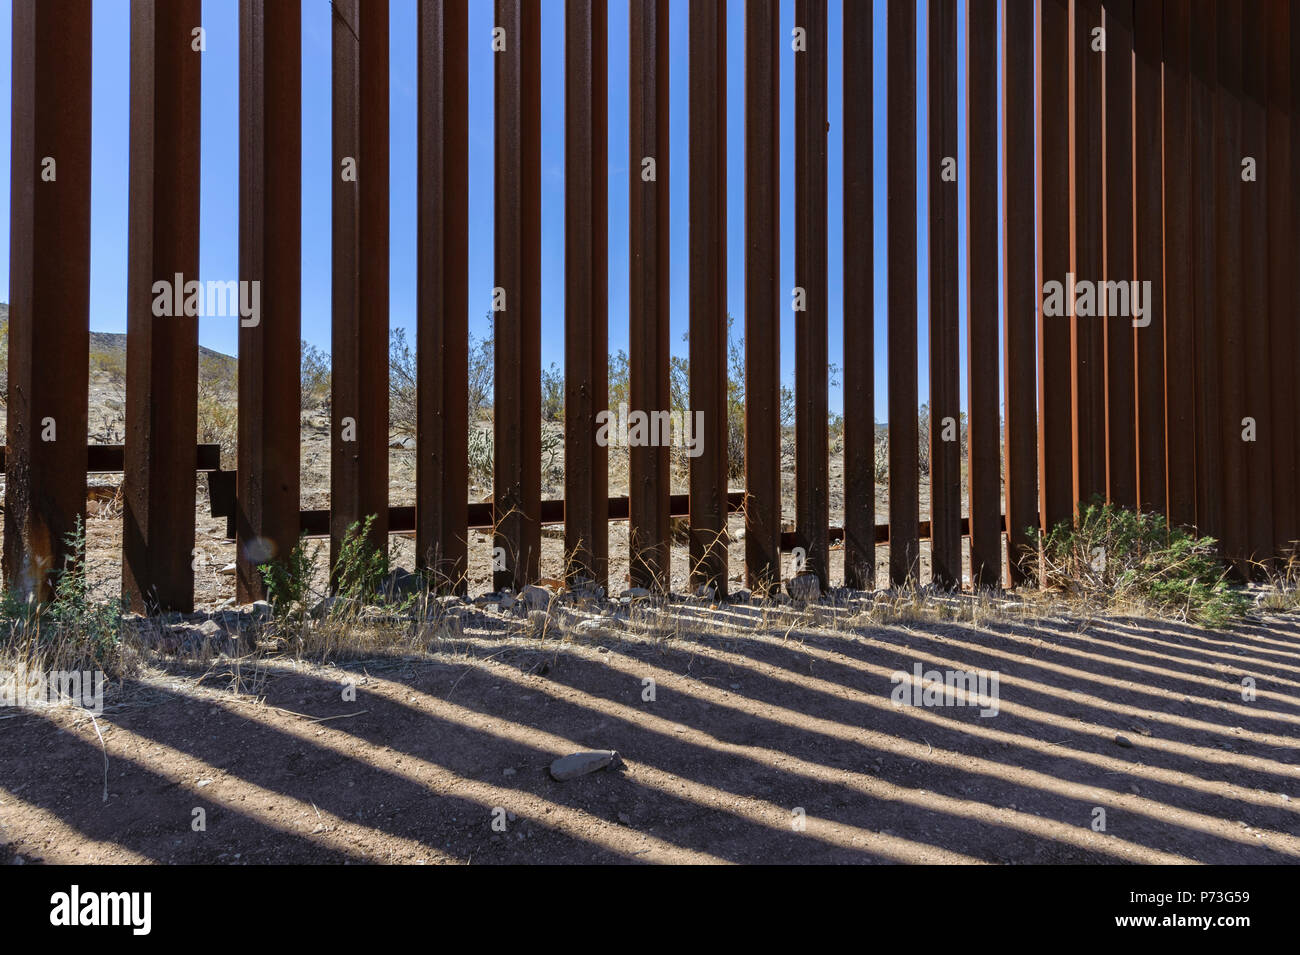 United States Grenzzaun, personensperre Detail, von US-Seite gesehen., jacumba Kalifornien, April 2018 Stockfoto